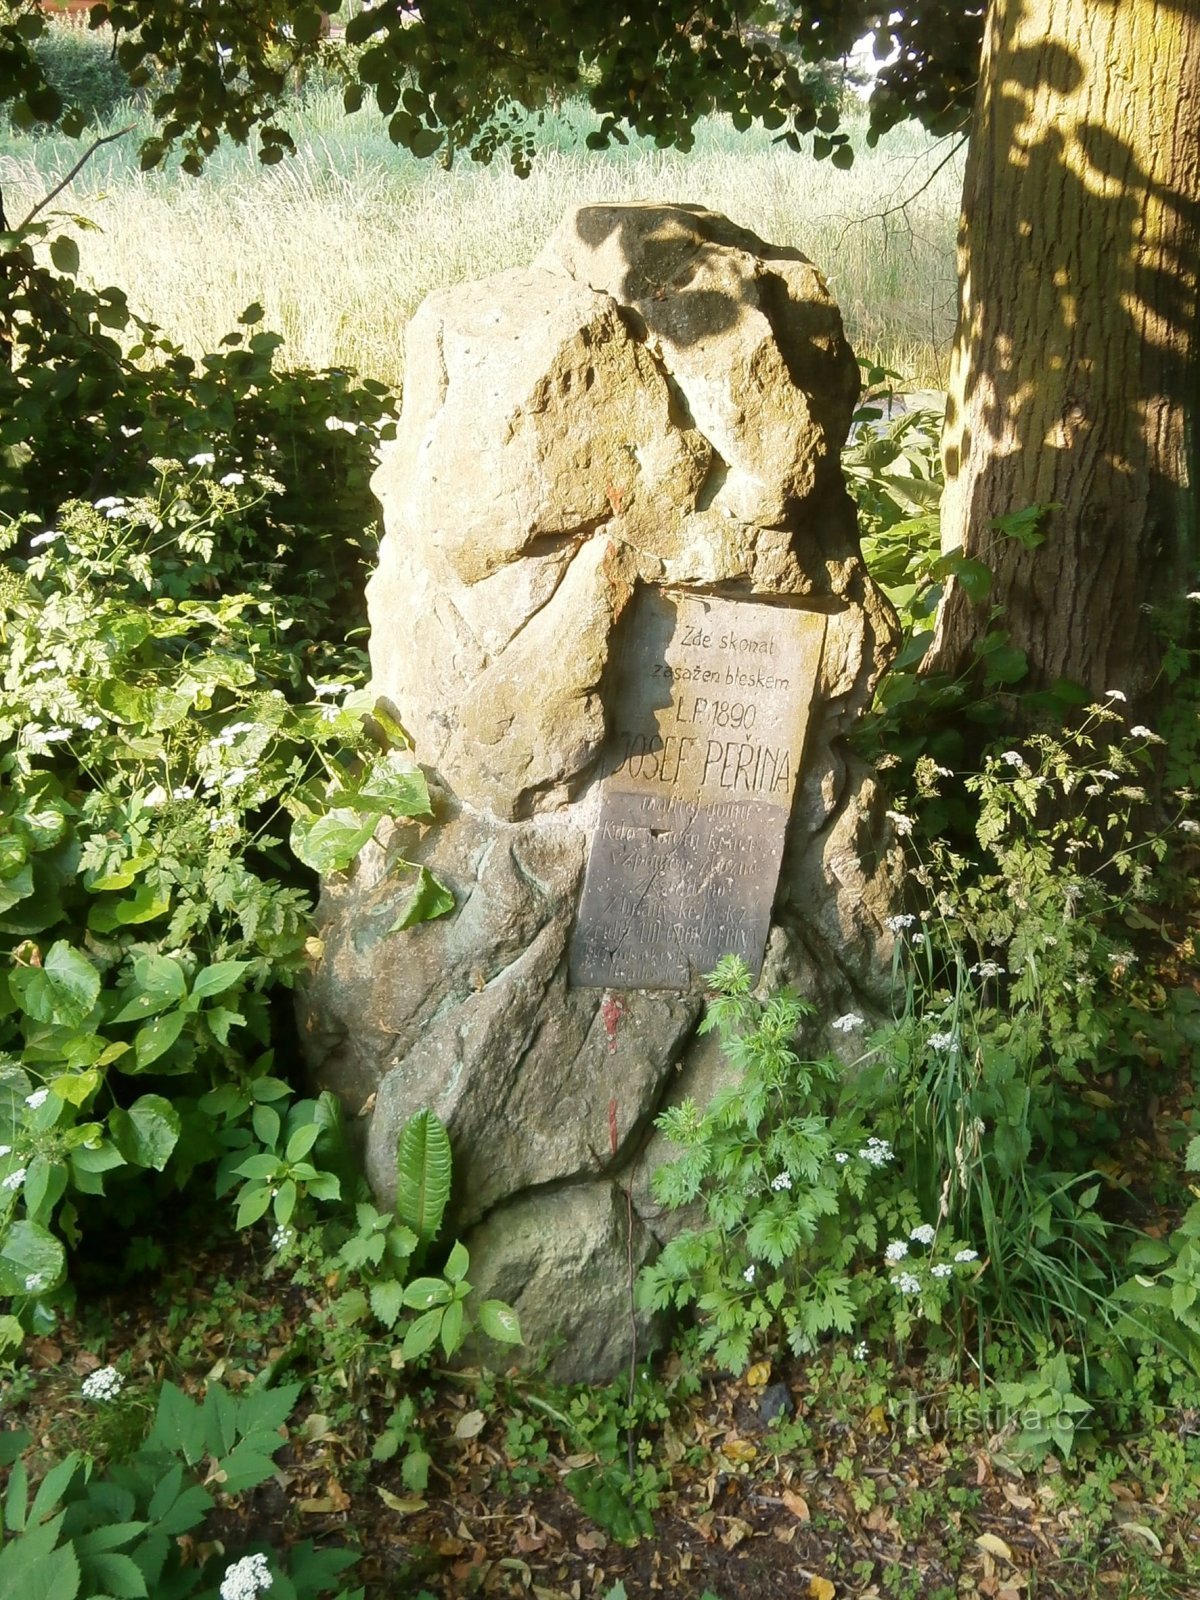 Monument voor Josef Peřina (Hradec Králové, 23.6.2013/XNUMX/XNUMX)